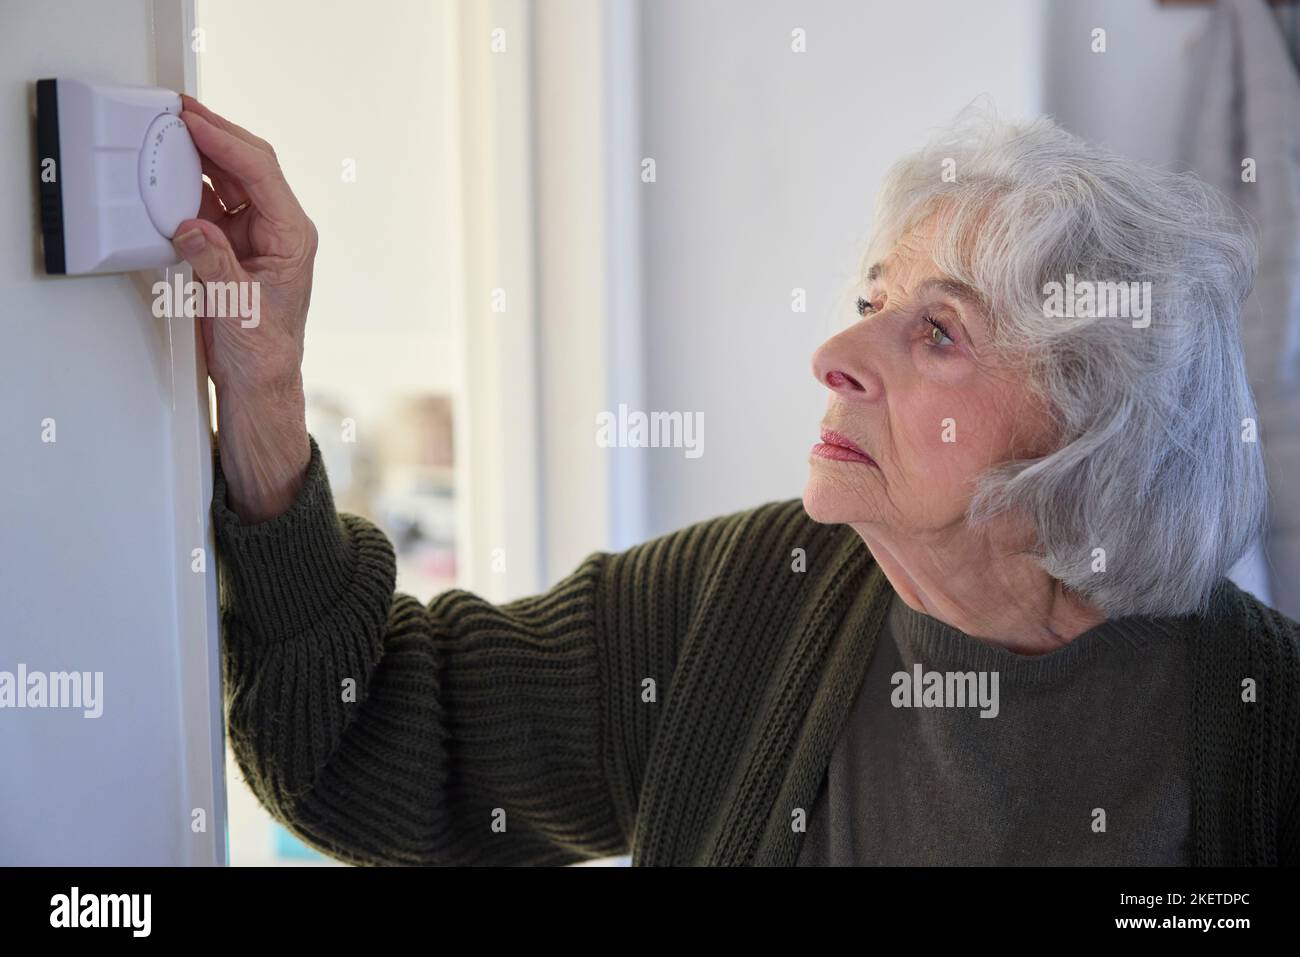 Mujer Senior preocupada que se despide del termostato de calefacción central en casa en crisis de energía Foto de stock